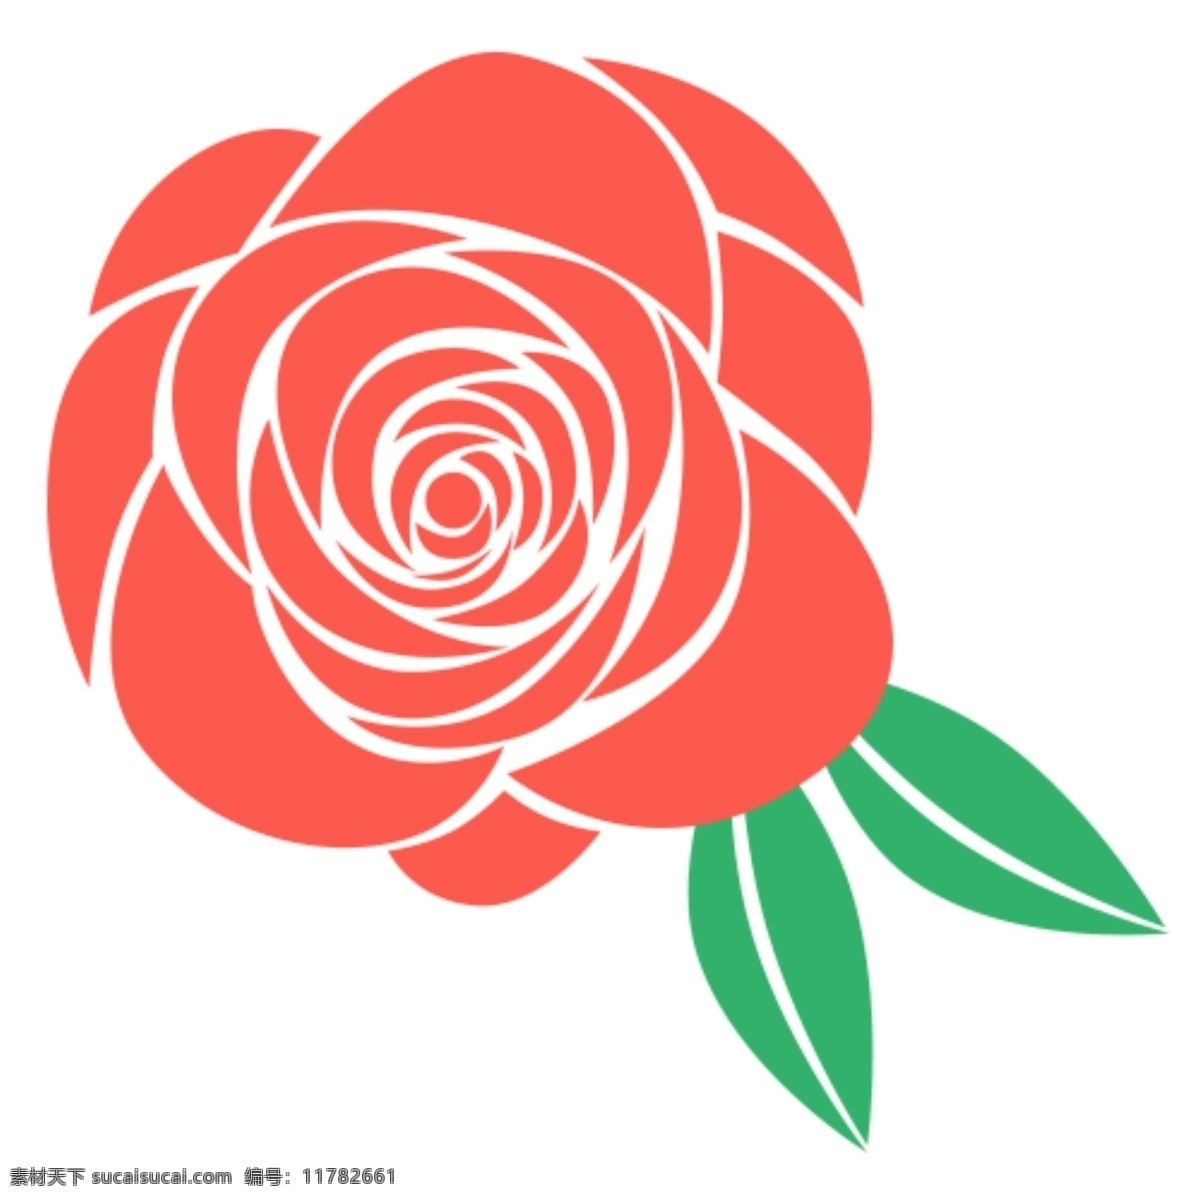 玫瑰 玫瑰图案 红玫瑰 玫瑰ps素材 玫瑰ps形状 分层